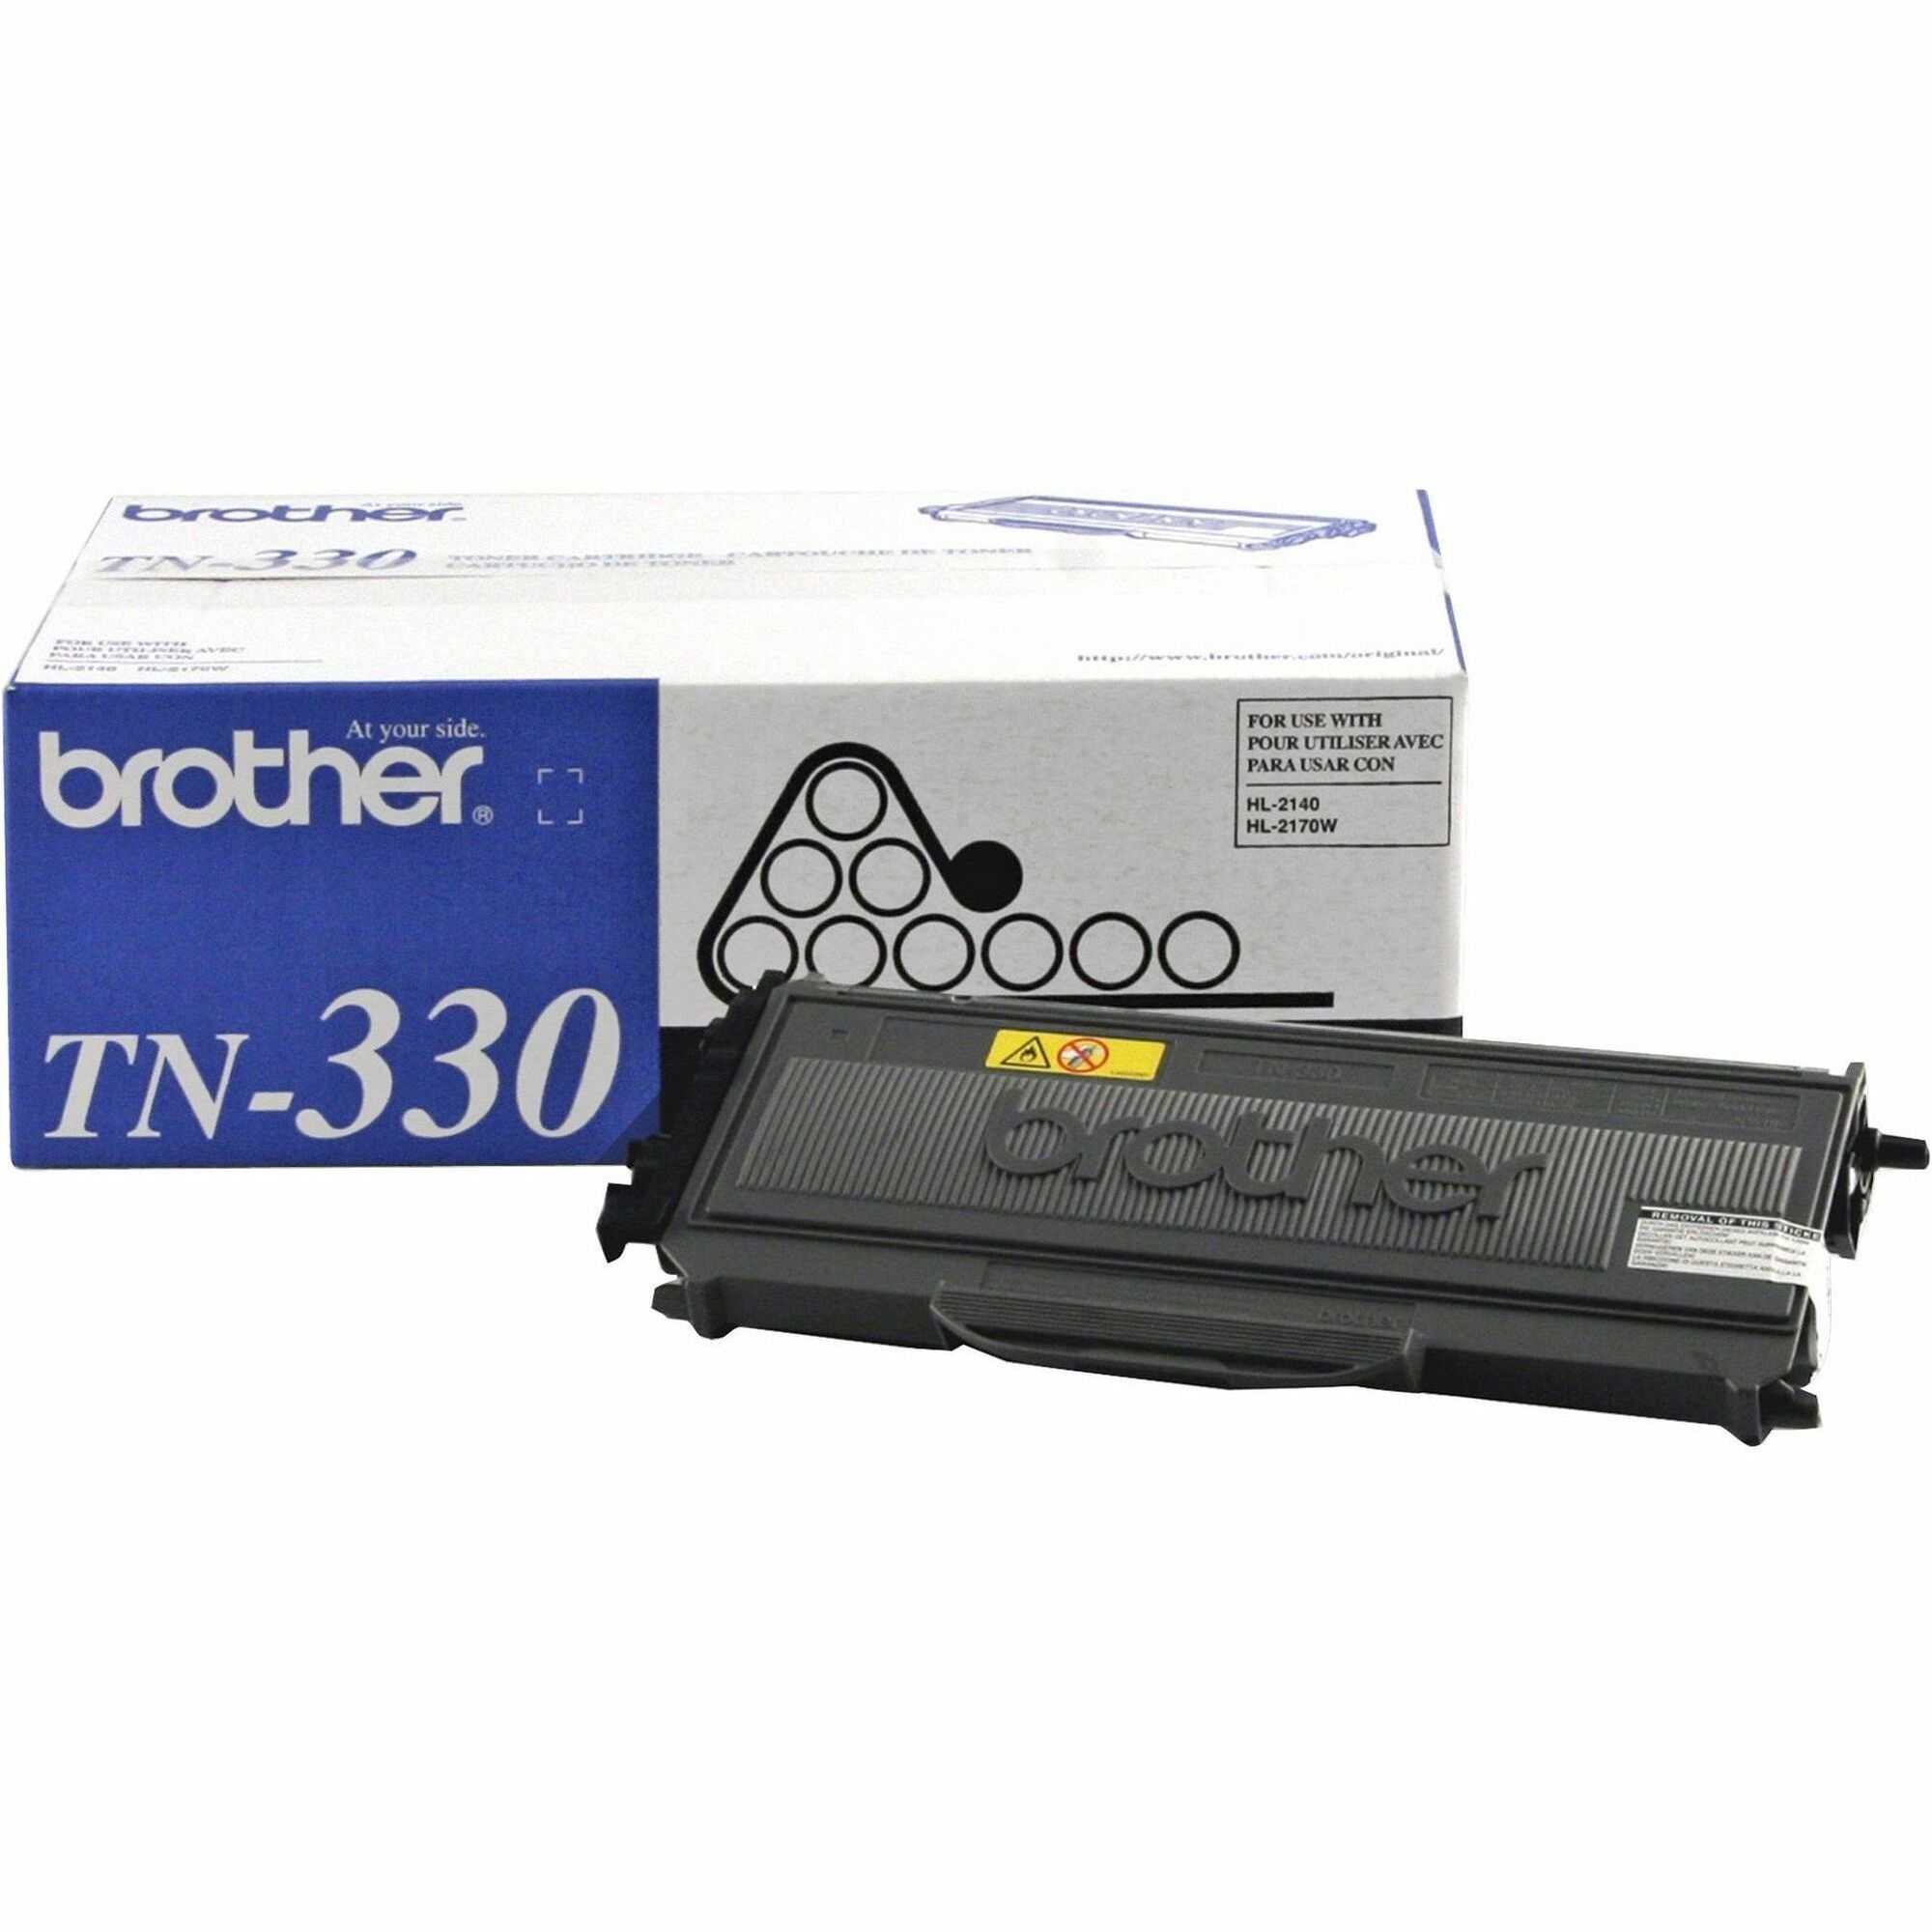 5x500 Blatt DIN A4 80 g//m/² Brother Tonerkassette TN-2320 schwarz /& Basics Druckerpapier Wei/ß